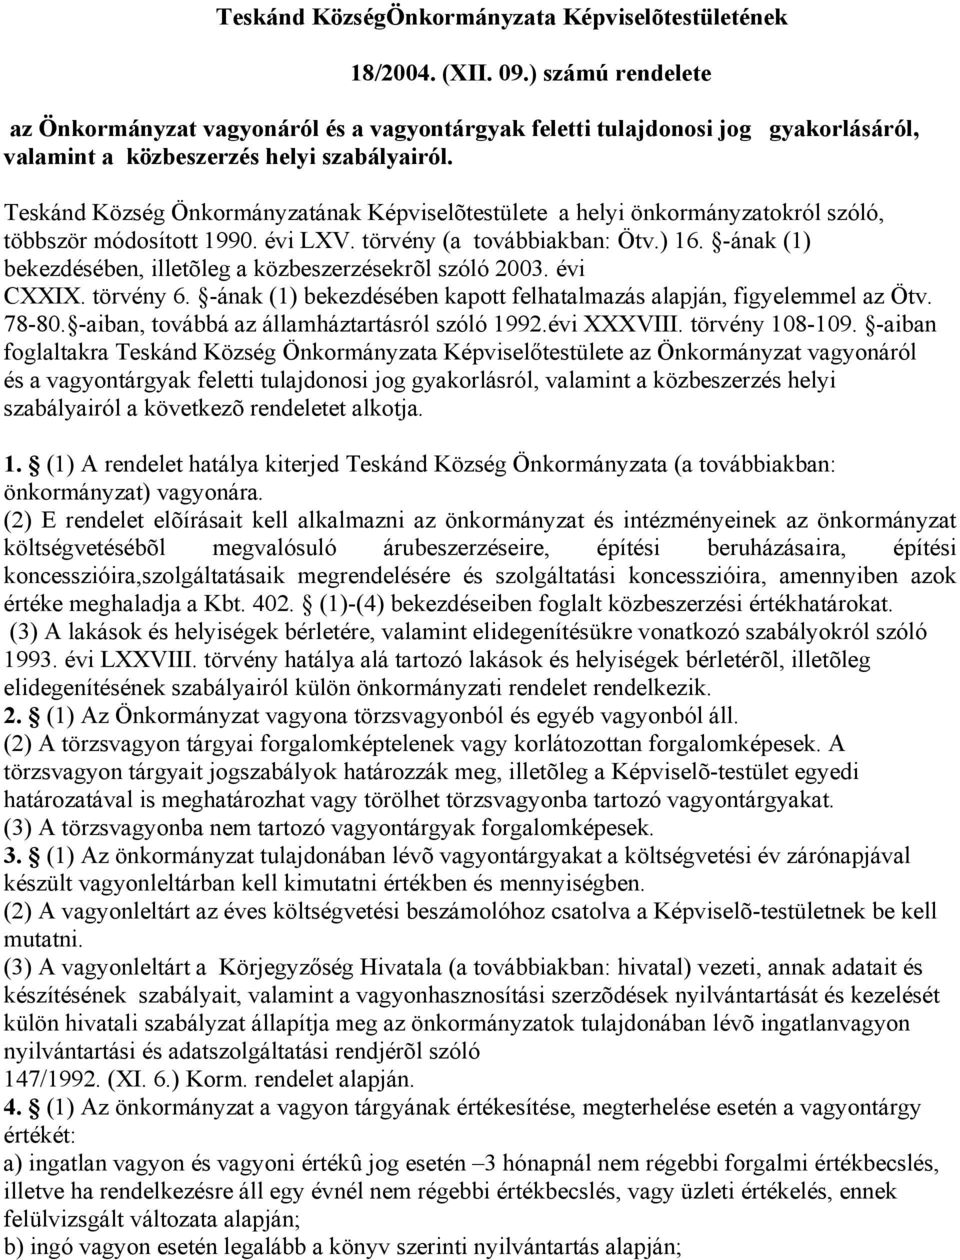 Teskánd Község Önkormányzatának Képviselõtestülete a helyi önkormányzatokról szóló, többször módosított 1990. évi LXV. törvény (a továbbiakban: Ötv.) 16.